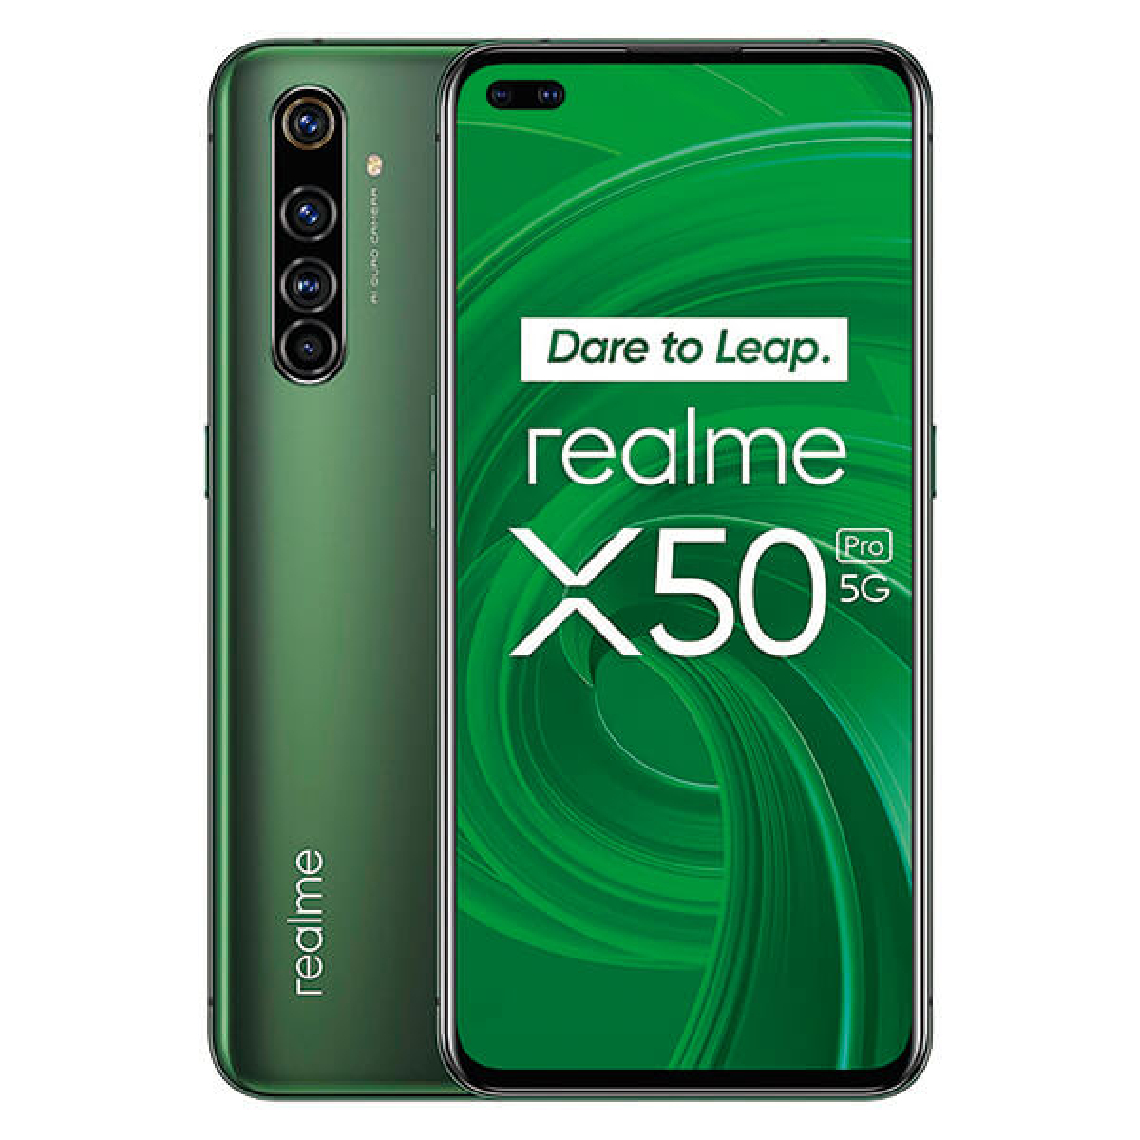 Realme - Realme X50 Pro 5G 8Go/128Go Vert (Moss Green) Dual SIM RMX2075 - Smartphone Android